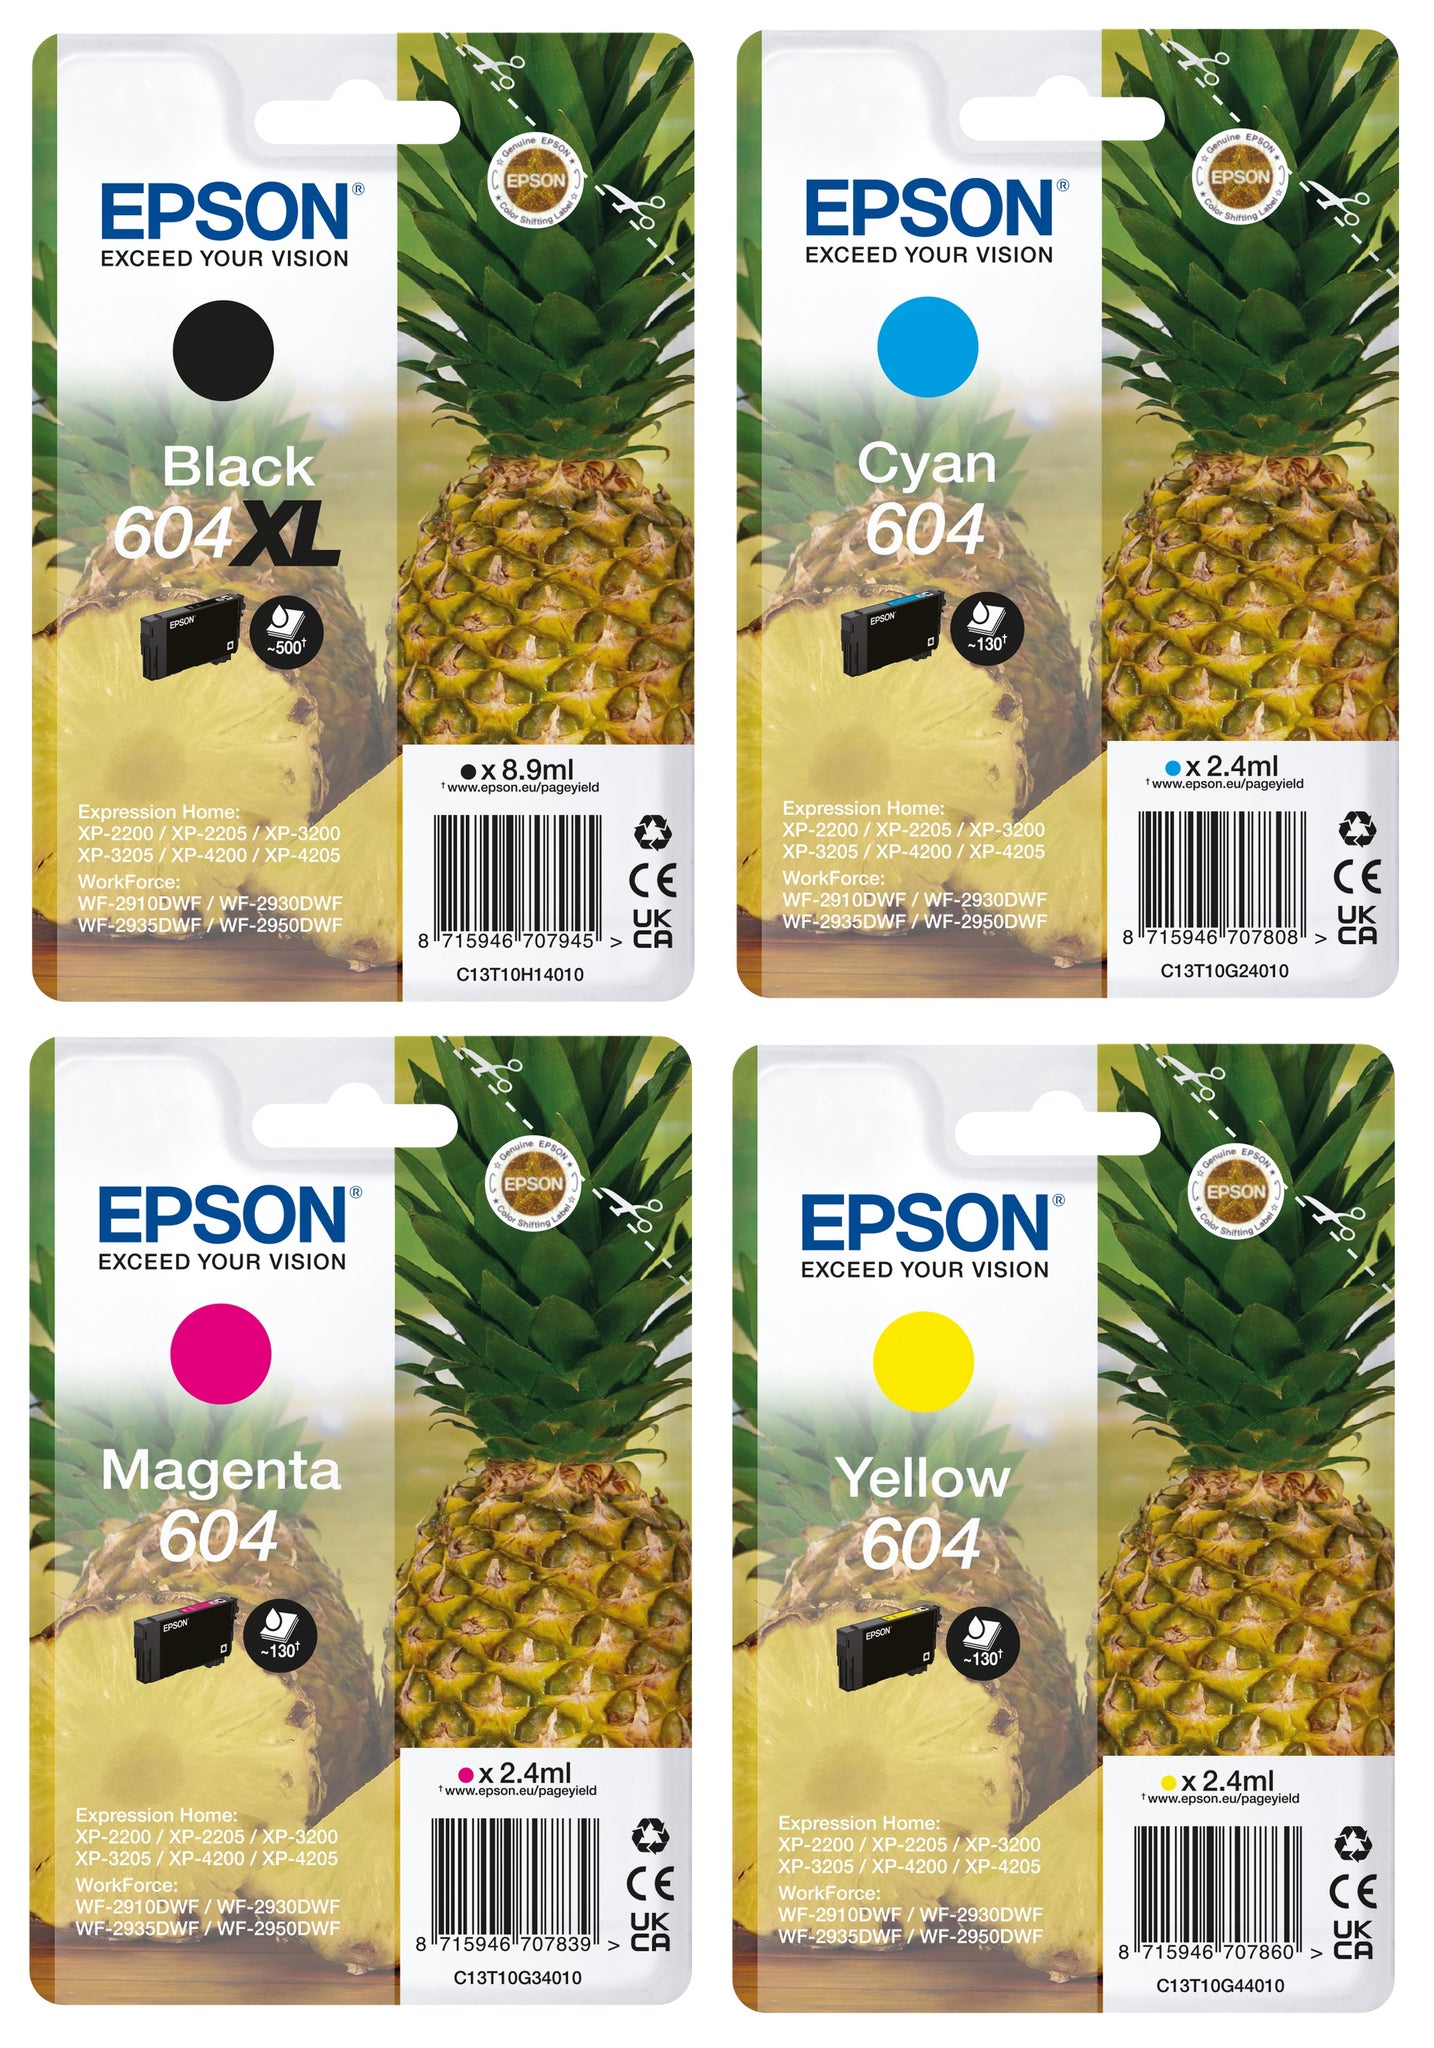 Buy Epson 604 Pineapple Ink Cartridge - Black, Printer ink